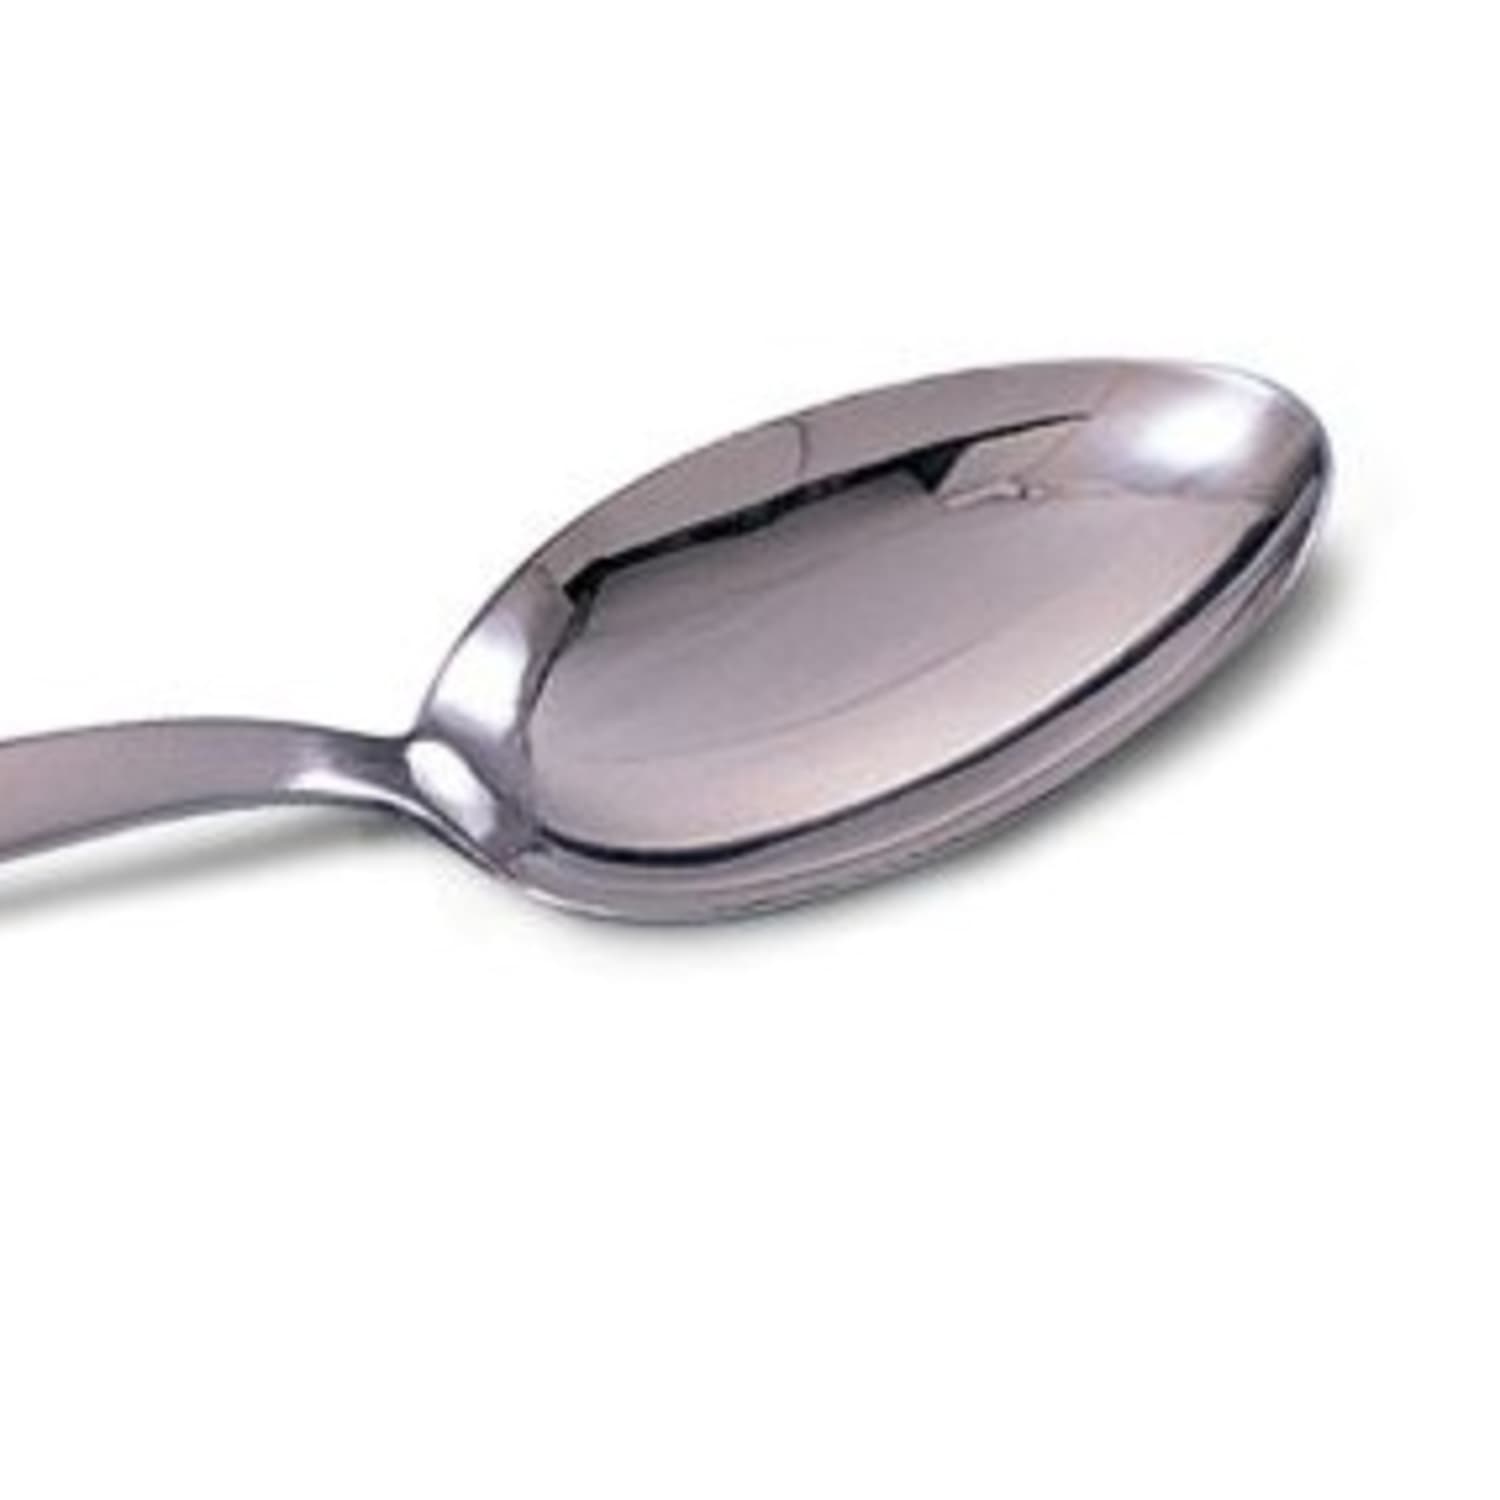 Gray Kunz Sauce Spoon, Kitchen Spoons